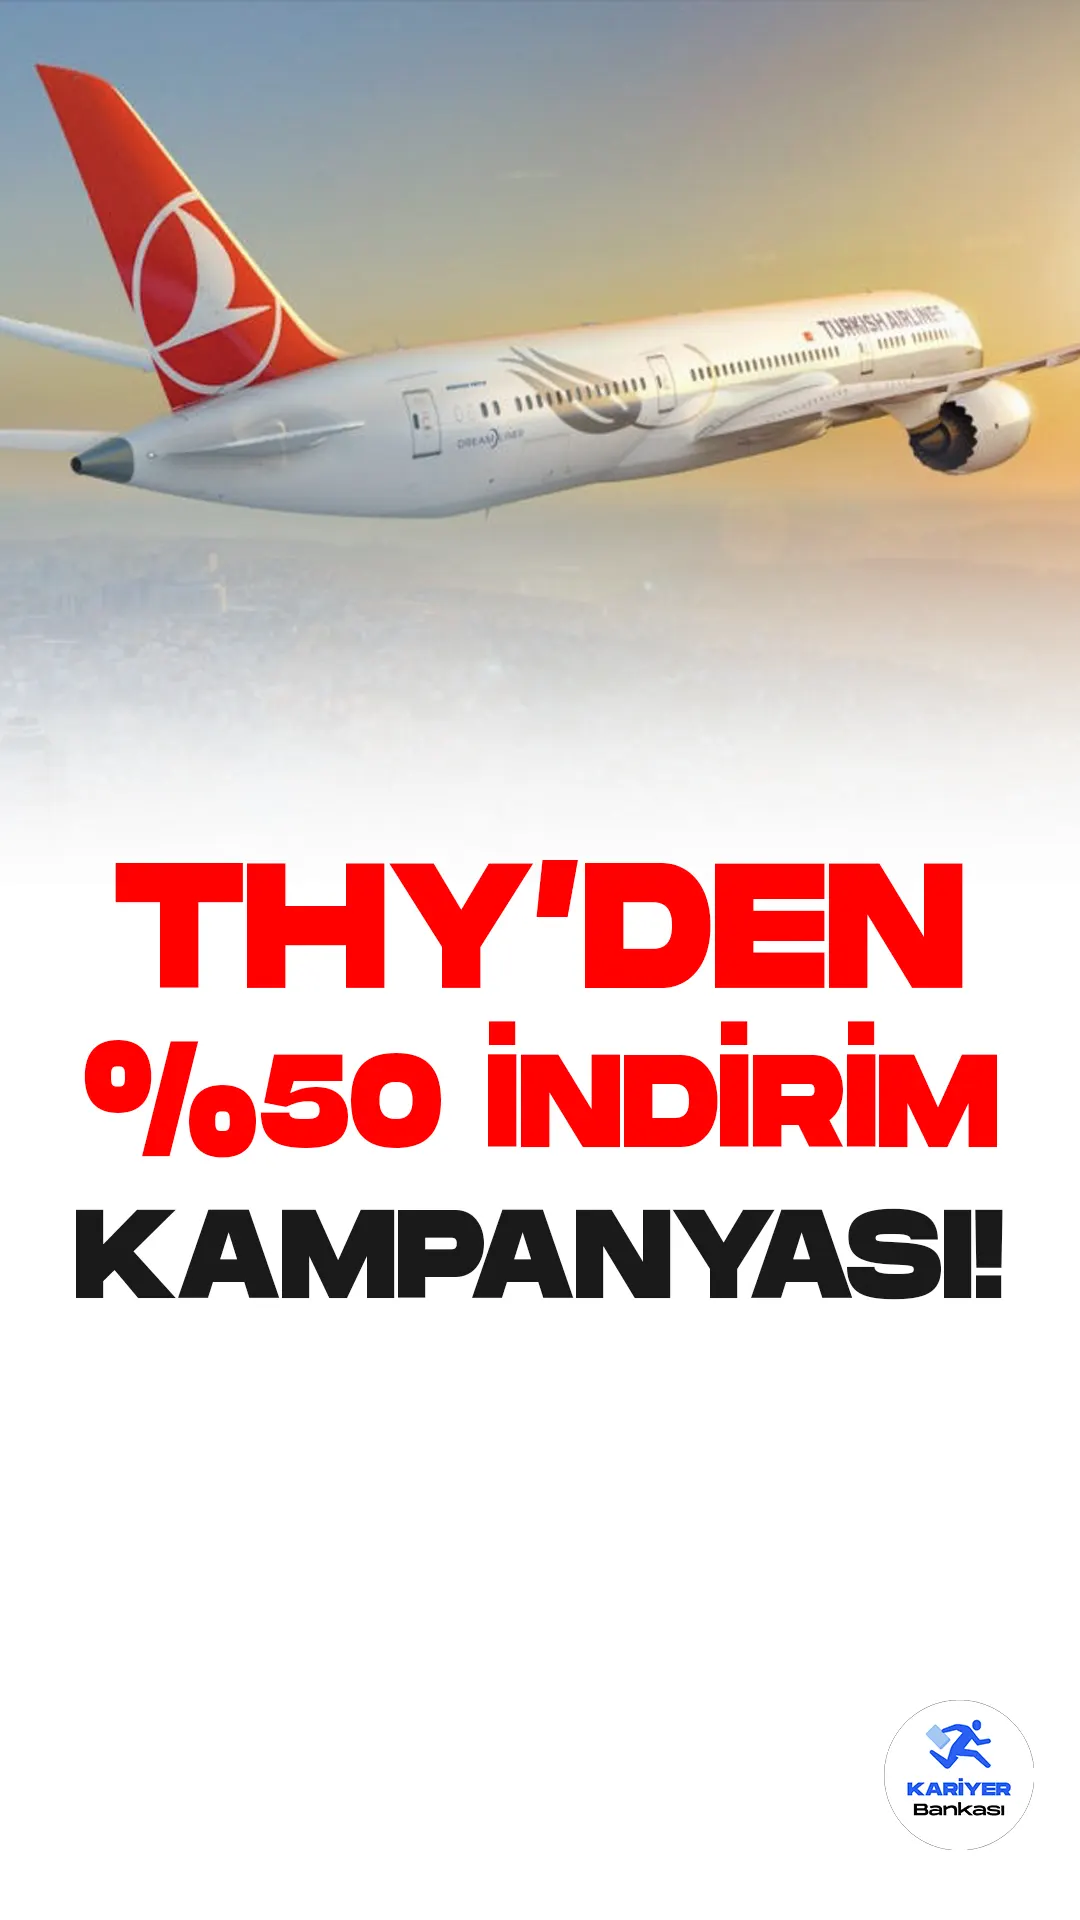 Türk Hava Yolları (THY) öğrenciler için yüzde 50 indirimli bilet kampanyası başlattı. Türk Hava Yolları resmi sayfasından yayımlanan kampanyaya dair duyuruda, online kaydınızı gerçekleştirdiğiniz taktirde yurt içi uçuşlarda 10 Nisan 2023 tarihine kadar %50, sonrasında %20 indirimli uçma fırsatı sunuyor.